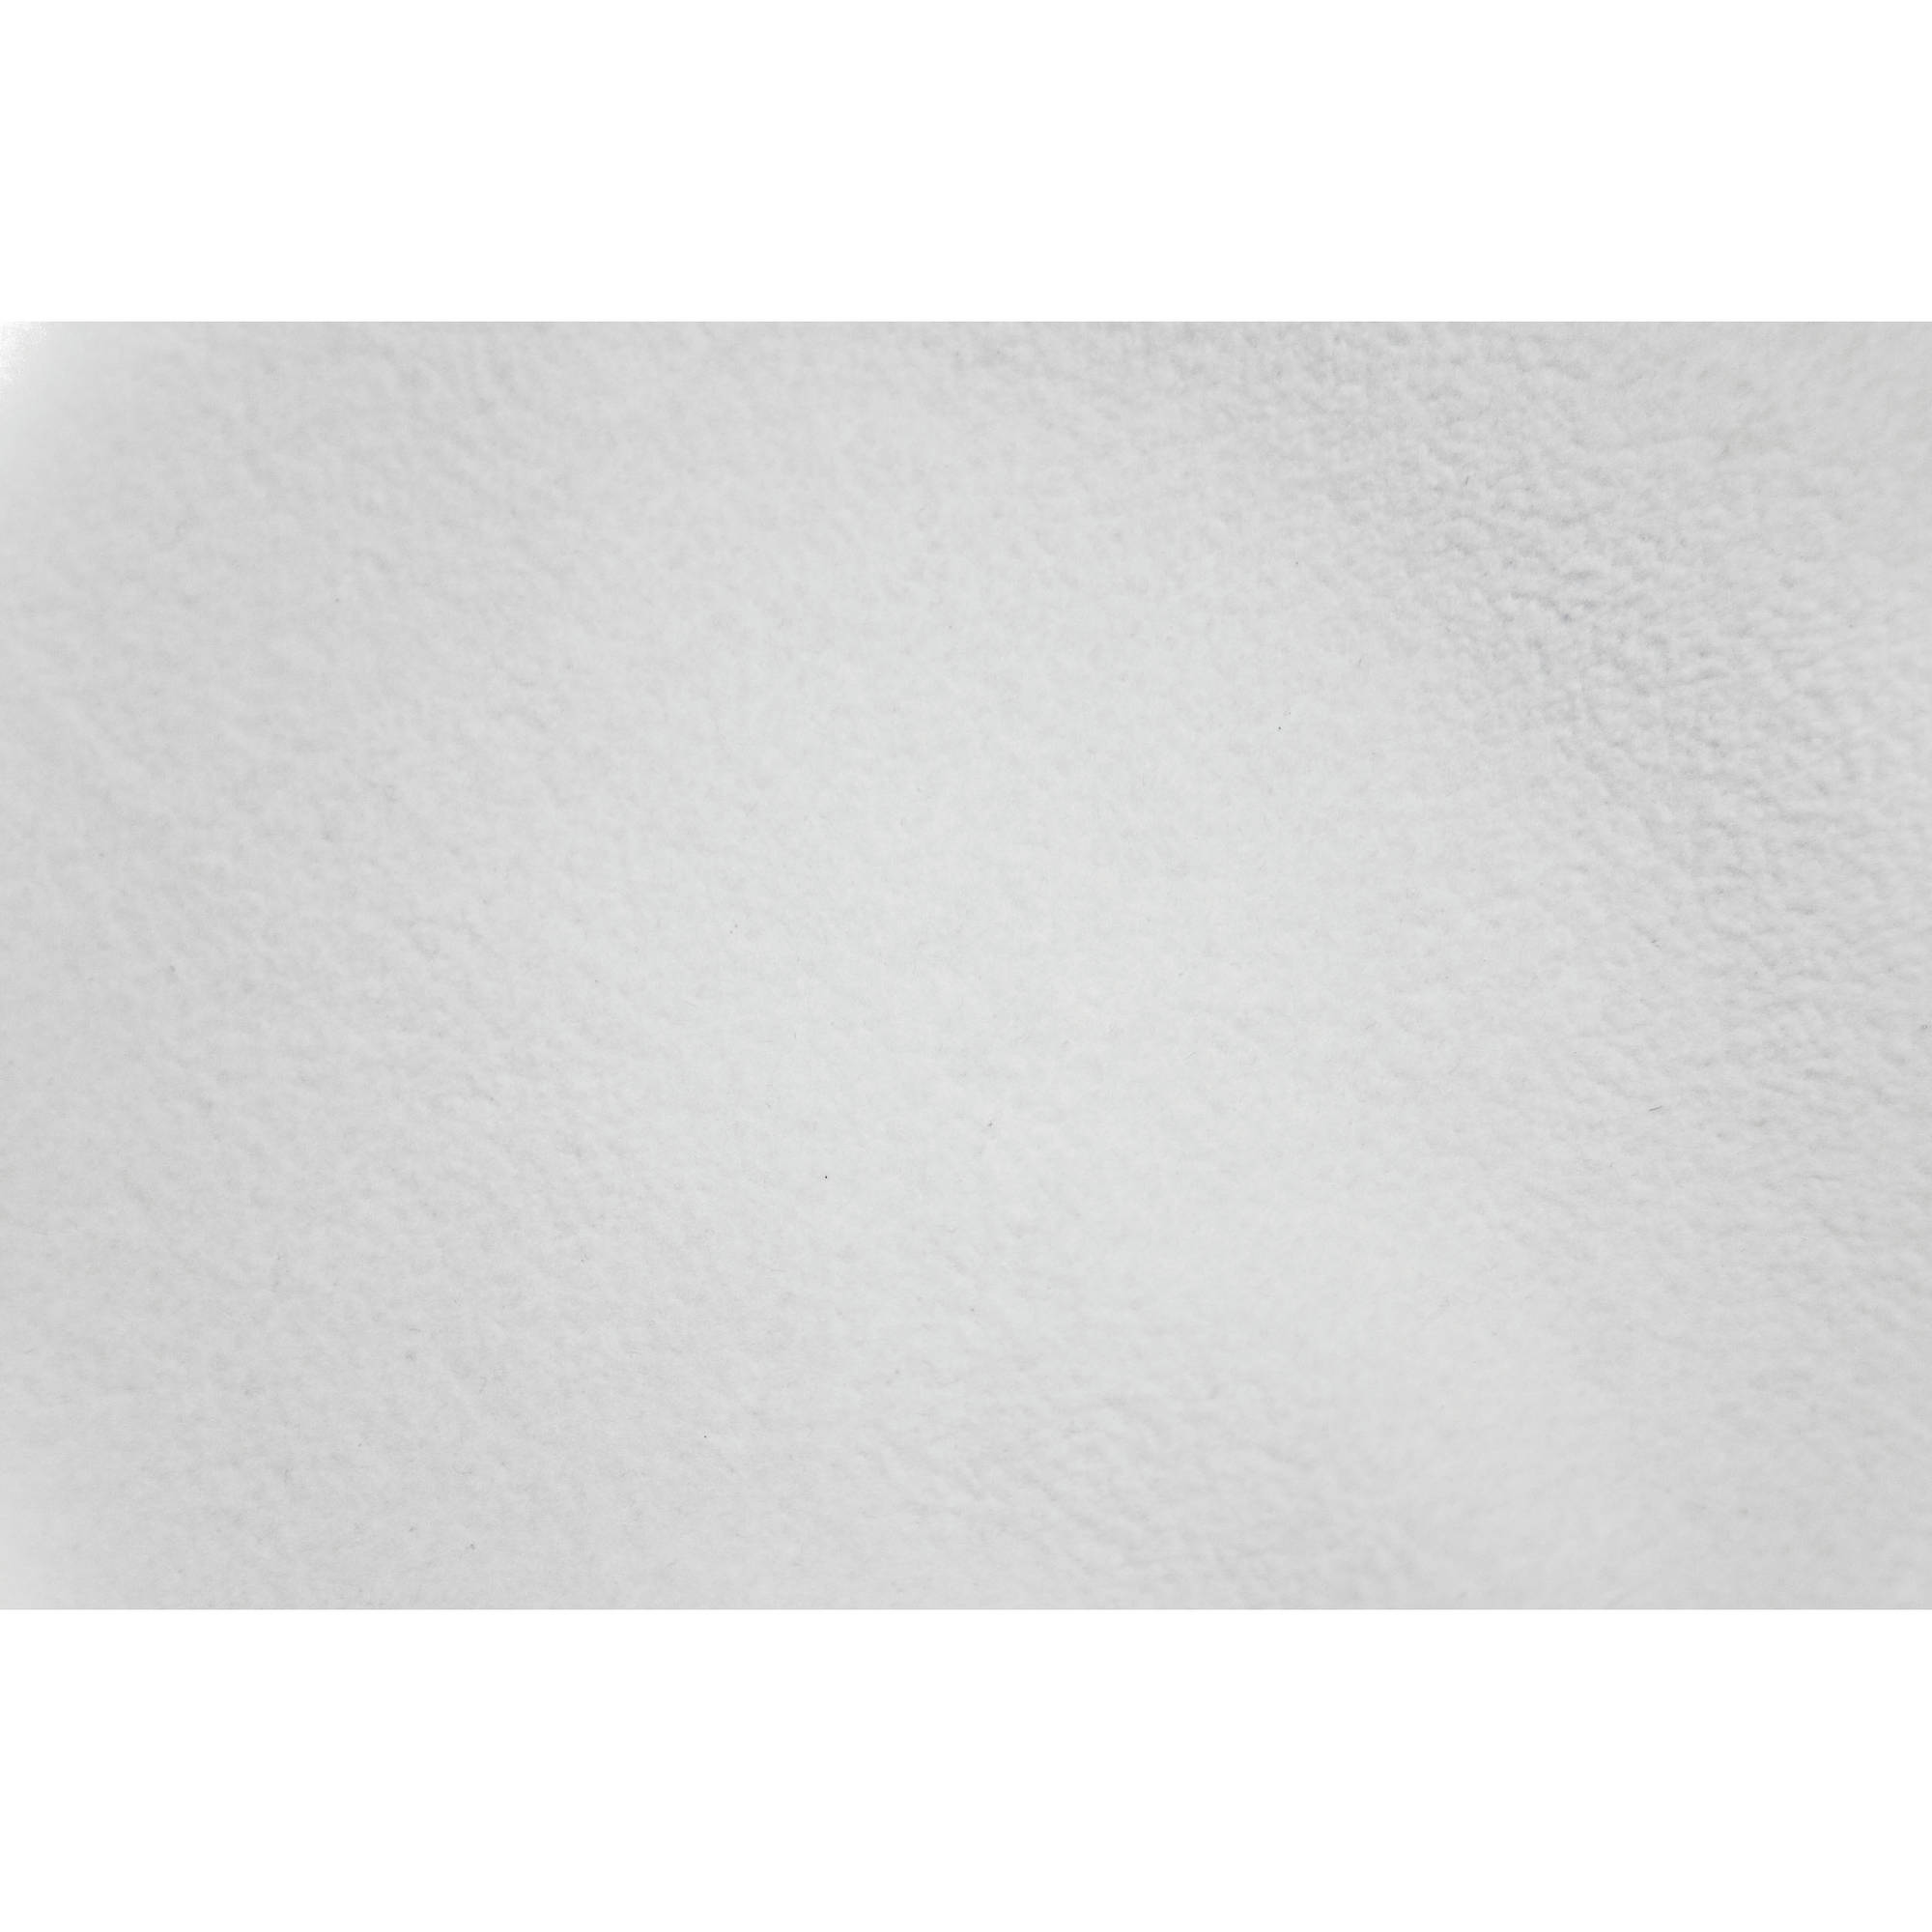 TEART DE RÉSISTANTS DE RILLONS WESTCOTT - Blanc haut de gamme (9 'x 20')